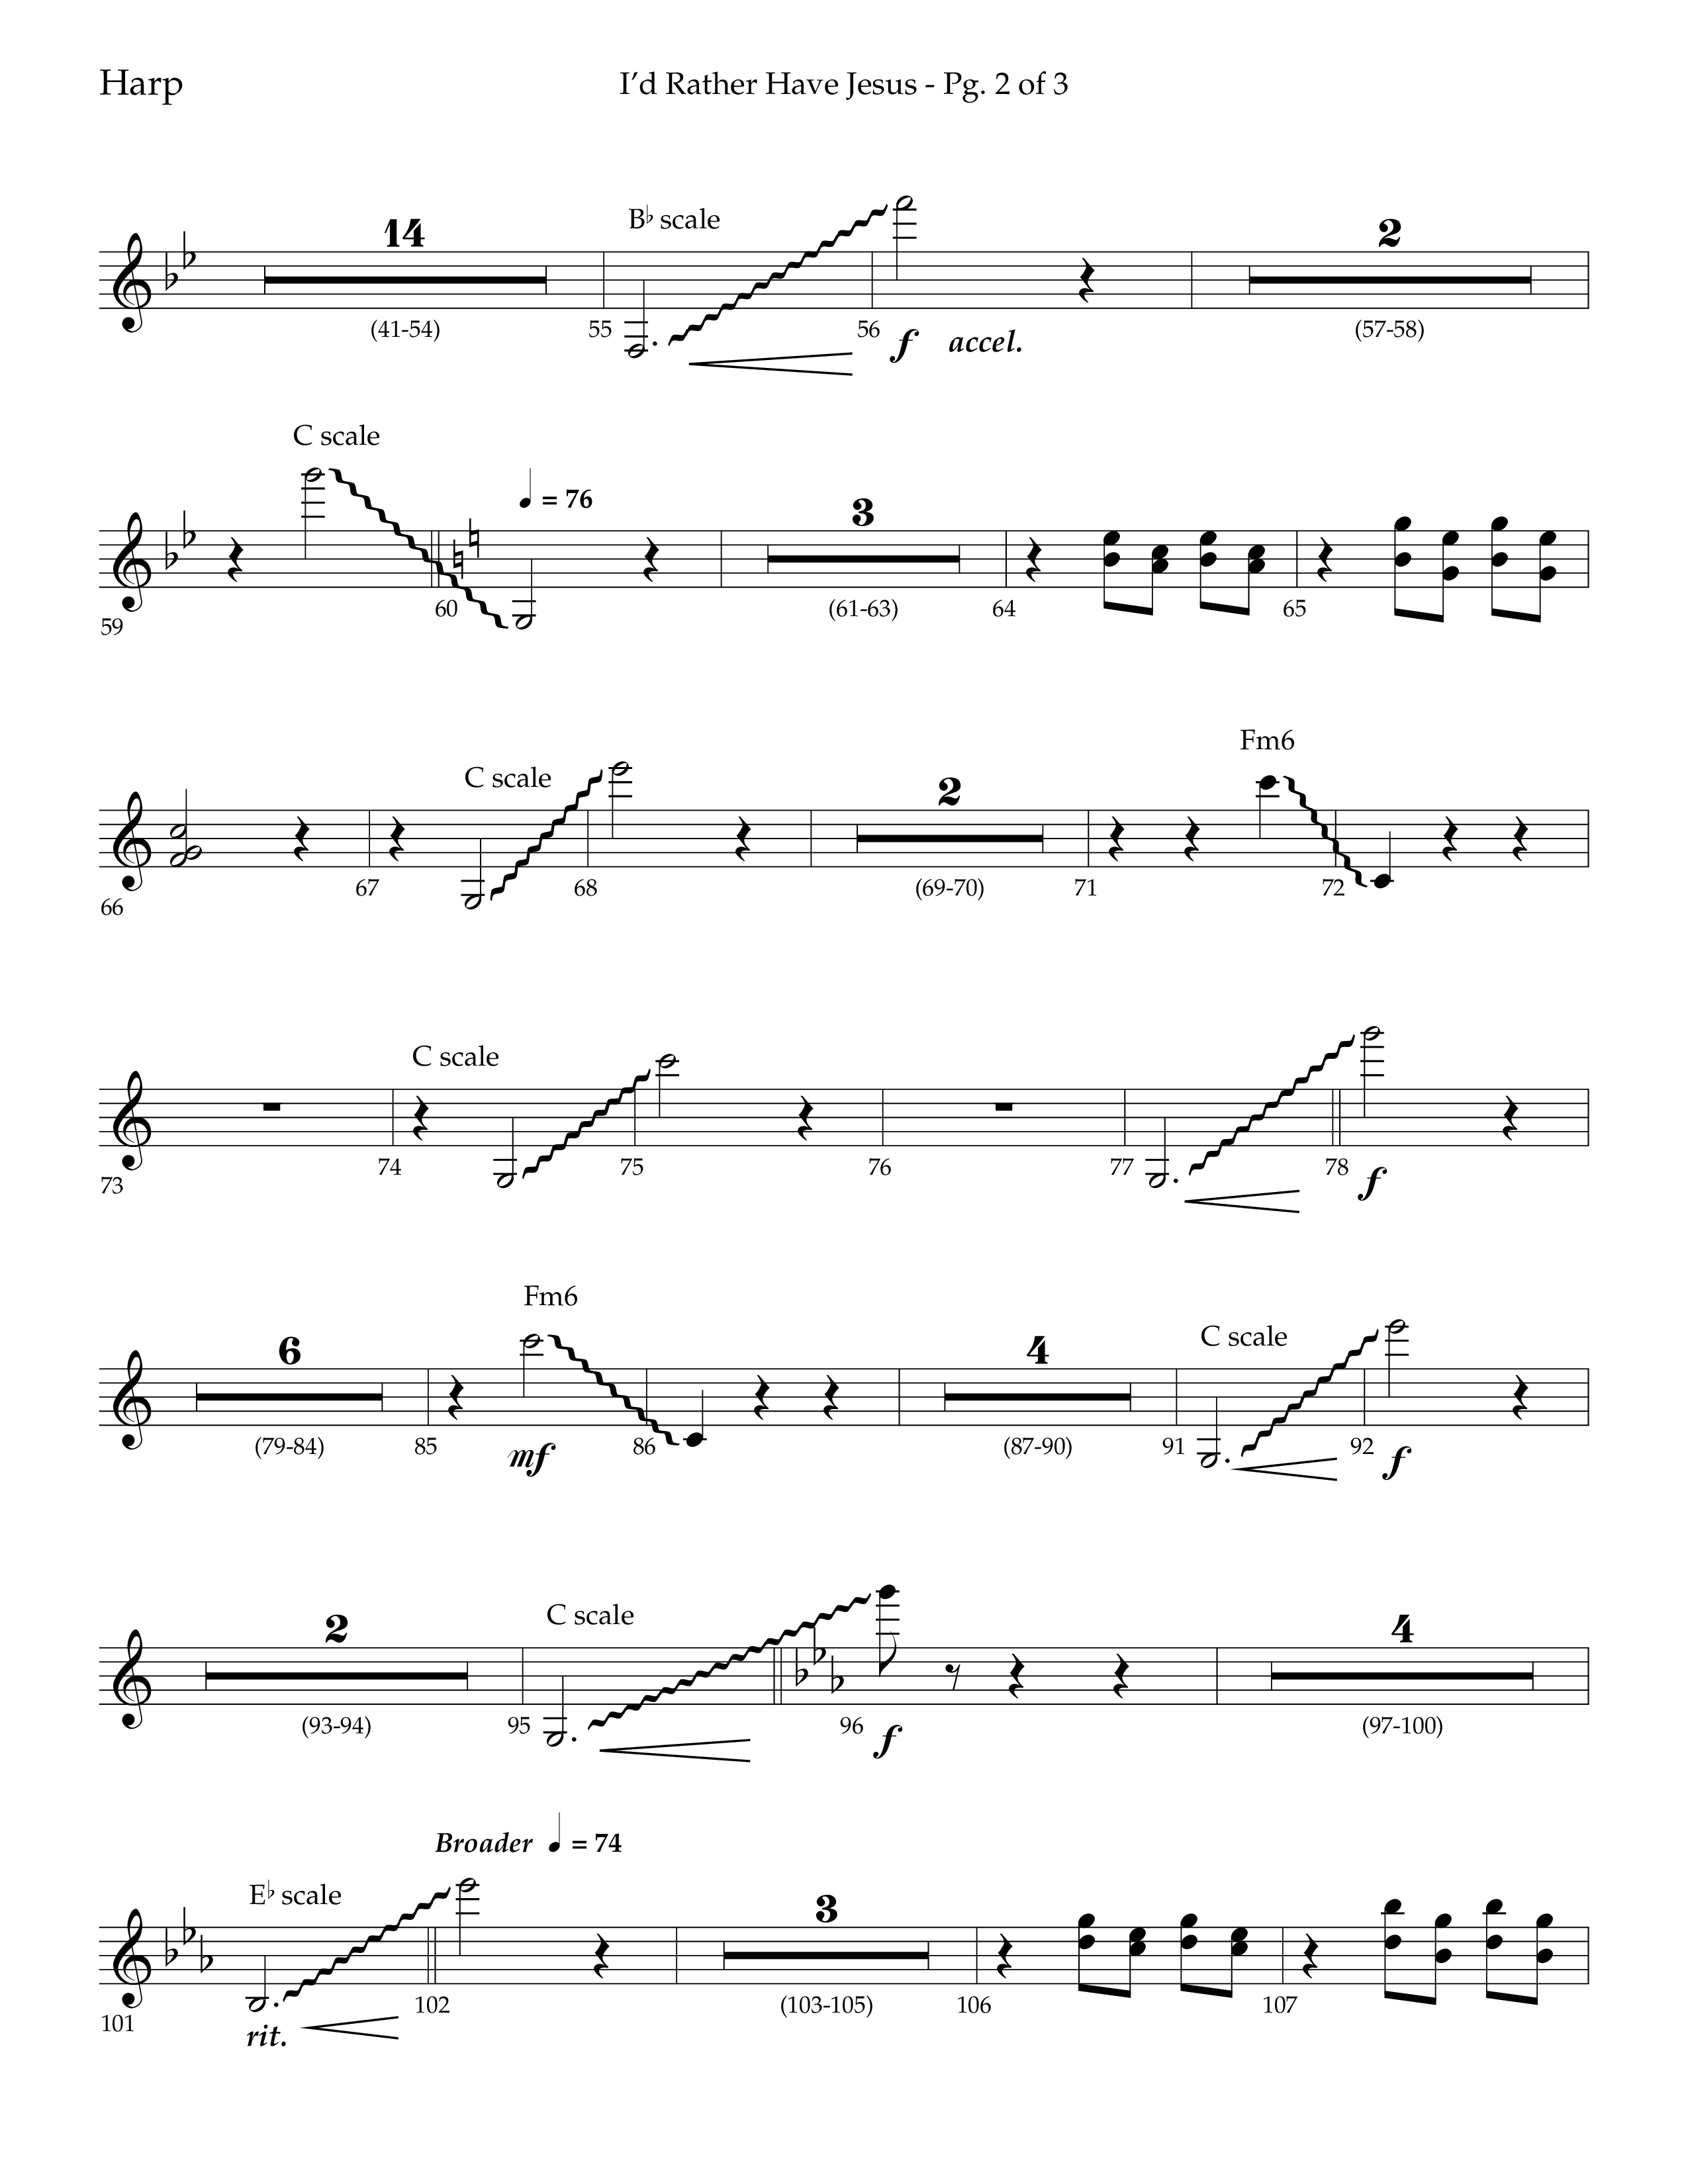 I'd Rather Have Jesus (Choral Anthem SATB) Harp (Lifeway Choral / Arr. Richard Kingsmore)